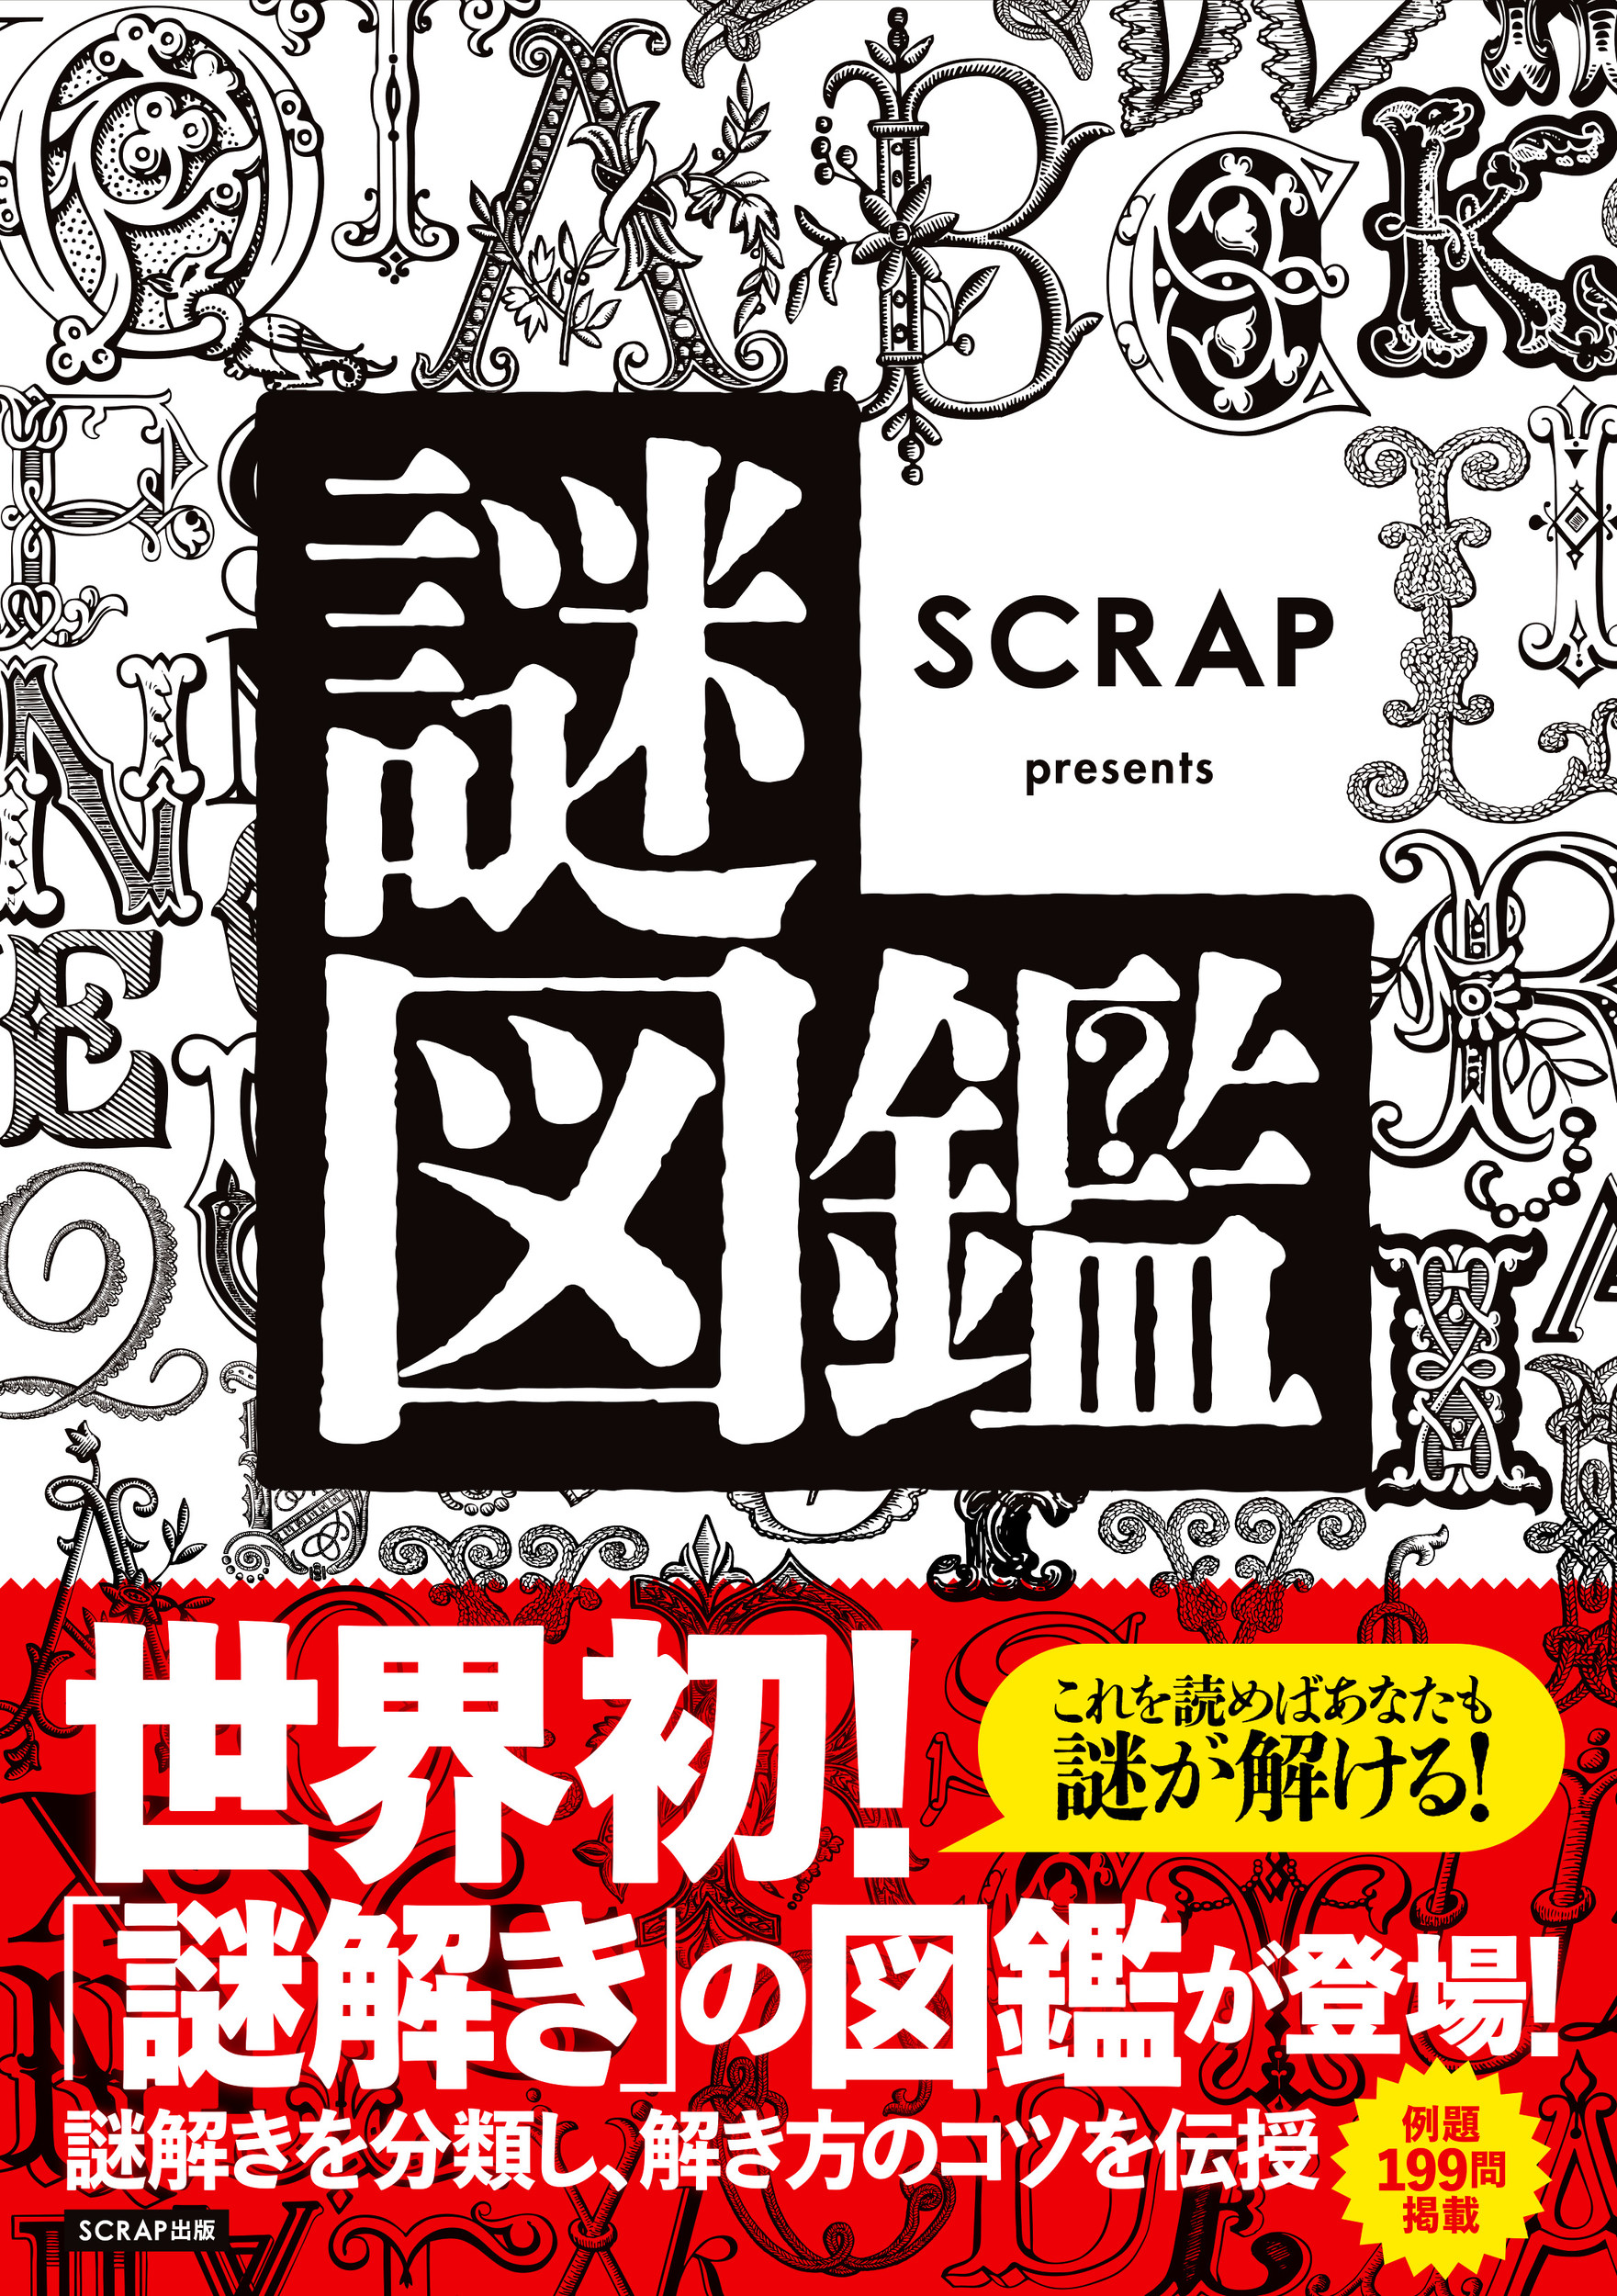 SCRAP presents 謎図鑑の商品画像